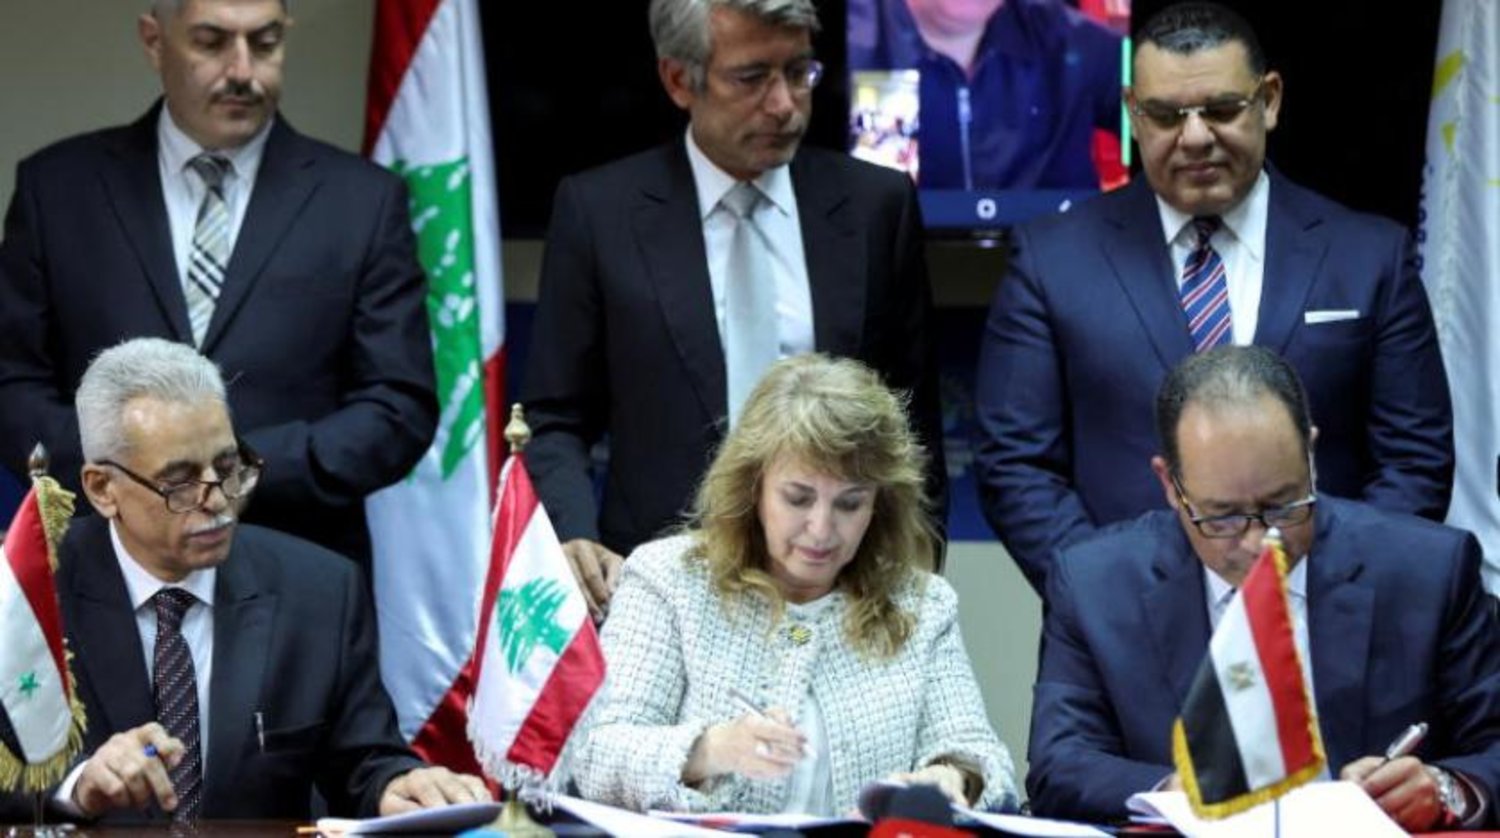 Lübnan Enerji Bakanlığı Petrol Tesisleri Genel Müdürü Aury Feghali (ortada), Mısır Doğal Gaz Holding Şirketi (EGAS) Yönetim Kurulu Başkanı Mecdi Celal (sağda) ve Suriye Genel Petrol Şirketi Genel Müdürü Nebih Khristen Beyrut'ta Enerji Bakanlığı'nda gaz ithalat anlaşması imzaladılar. (Reuters)